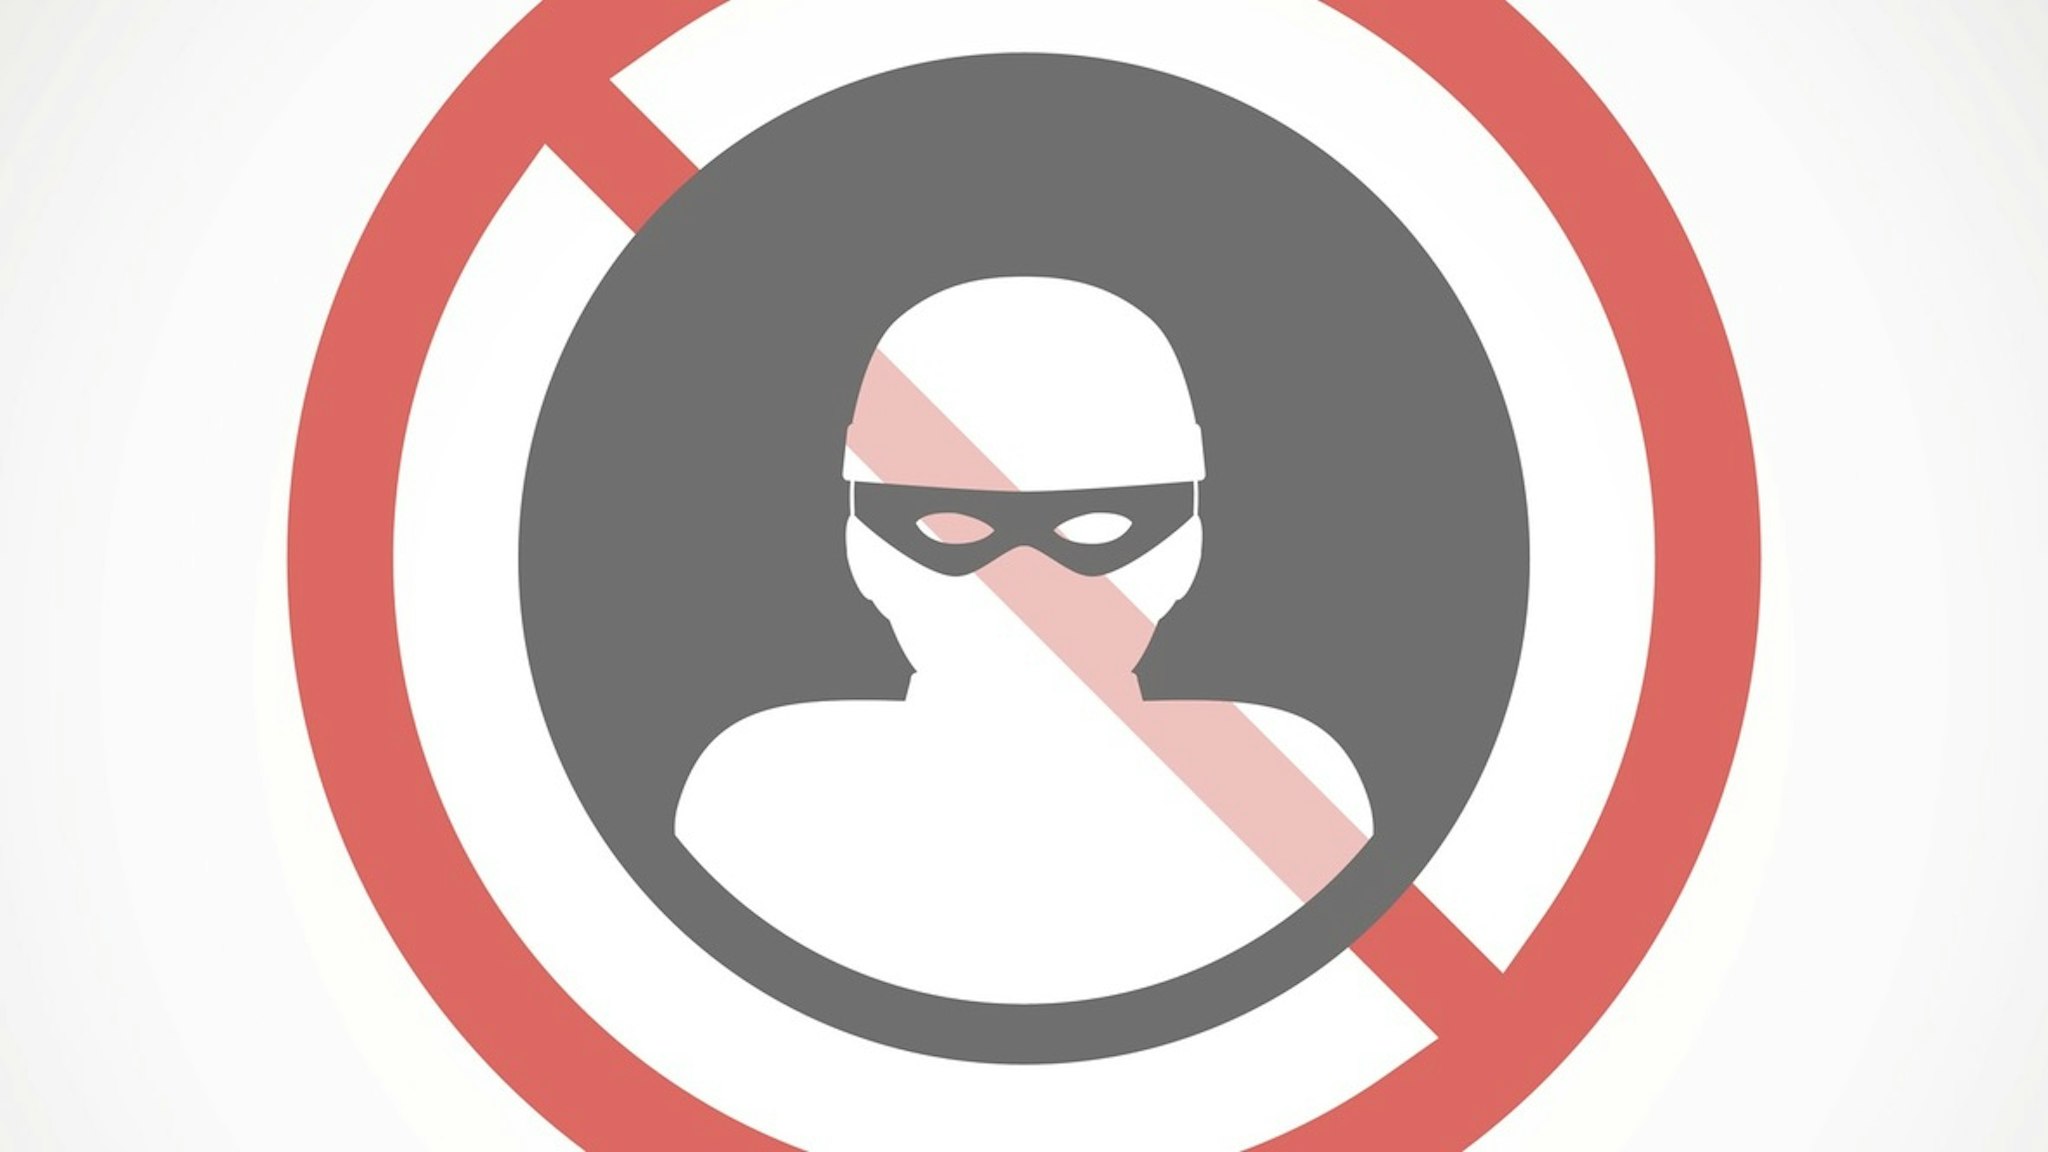 Forbidden signal with a thief - stock vector Illustration of a forbidden signal with a thief